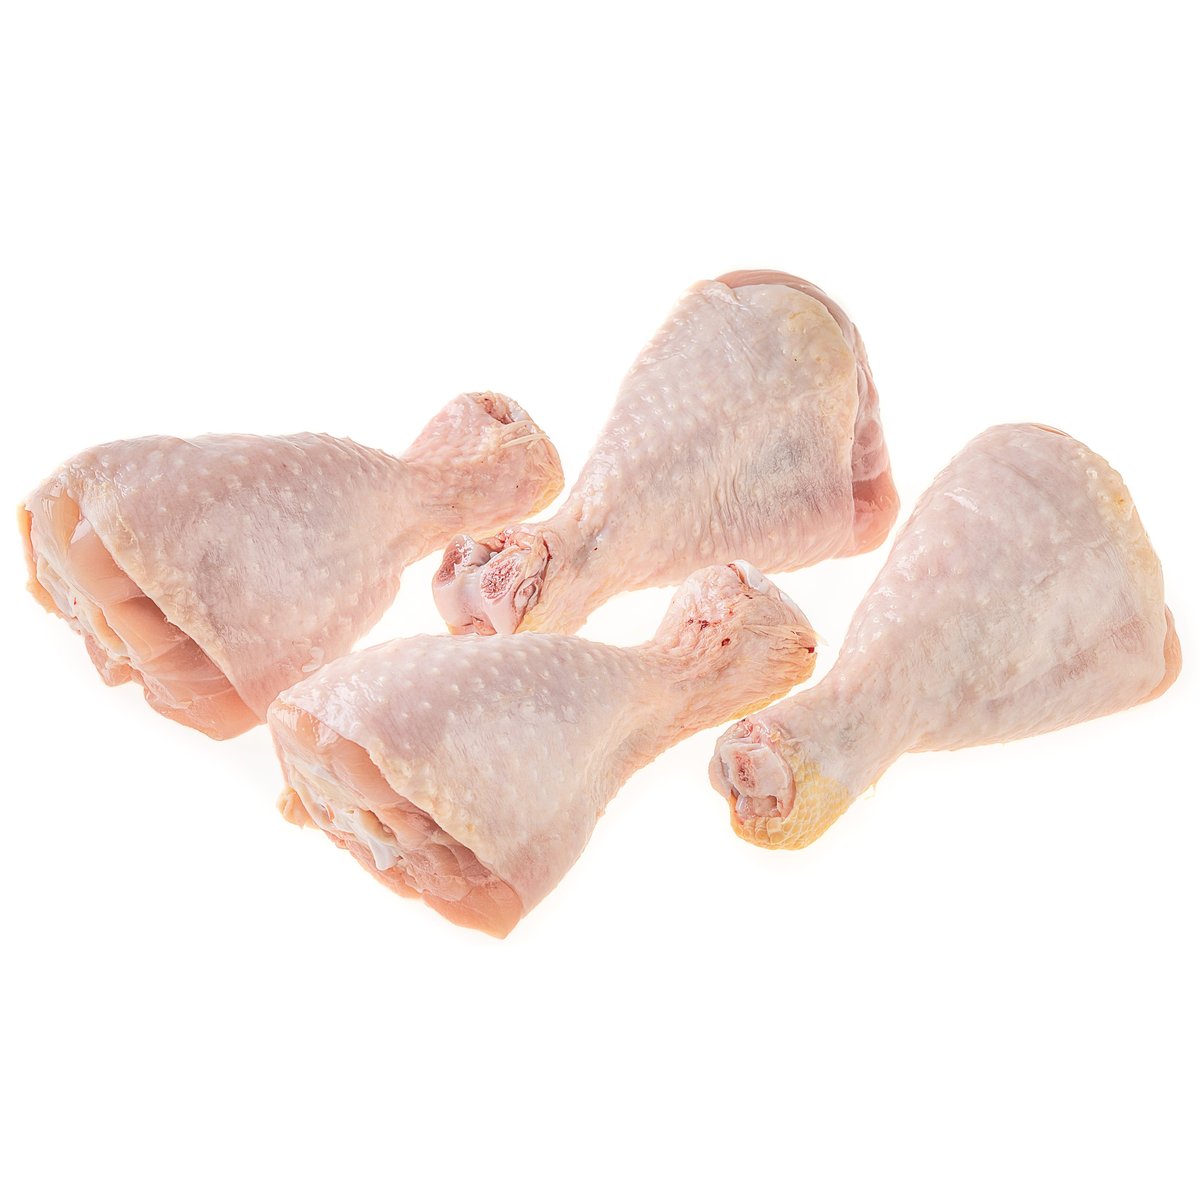 Světničkové kuře spodní stehna 4 ks